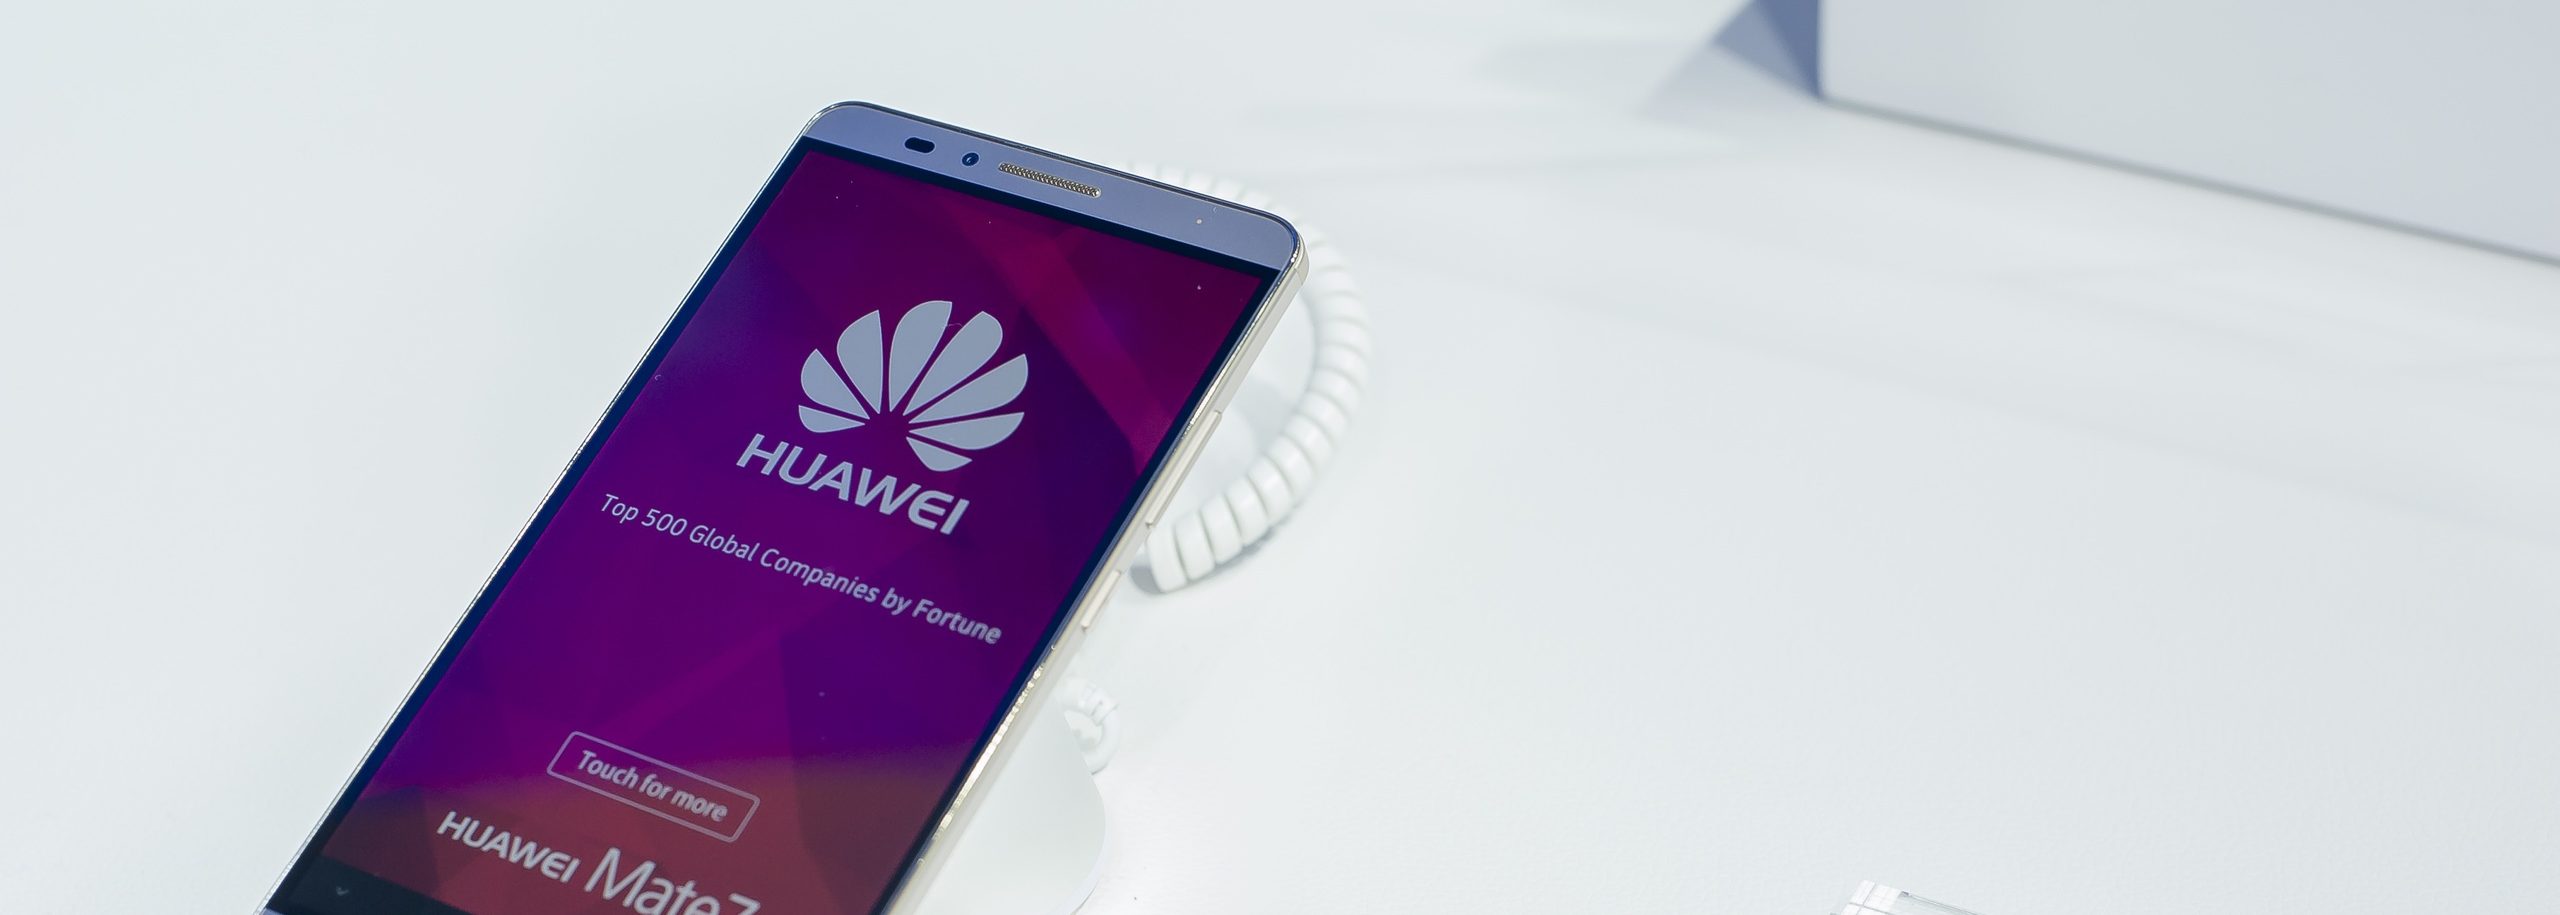 Reparation af Huawei telefon i Hvdovre